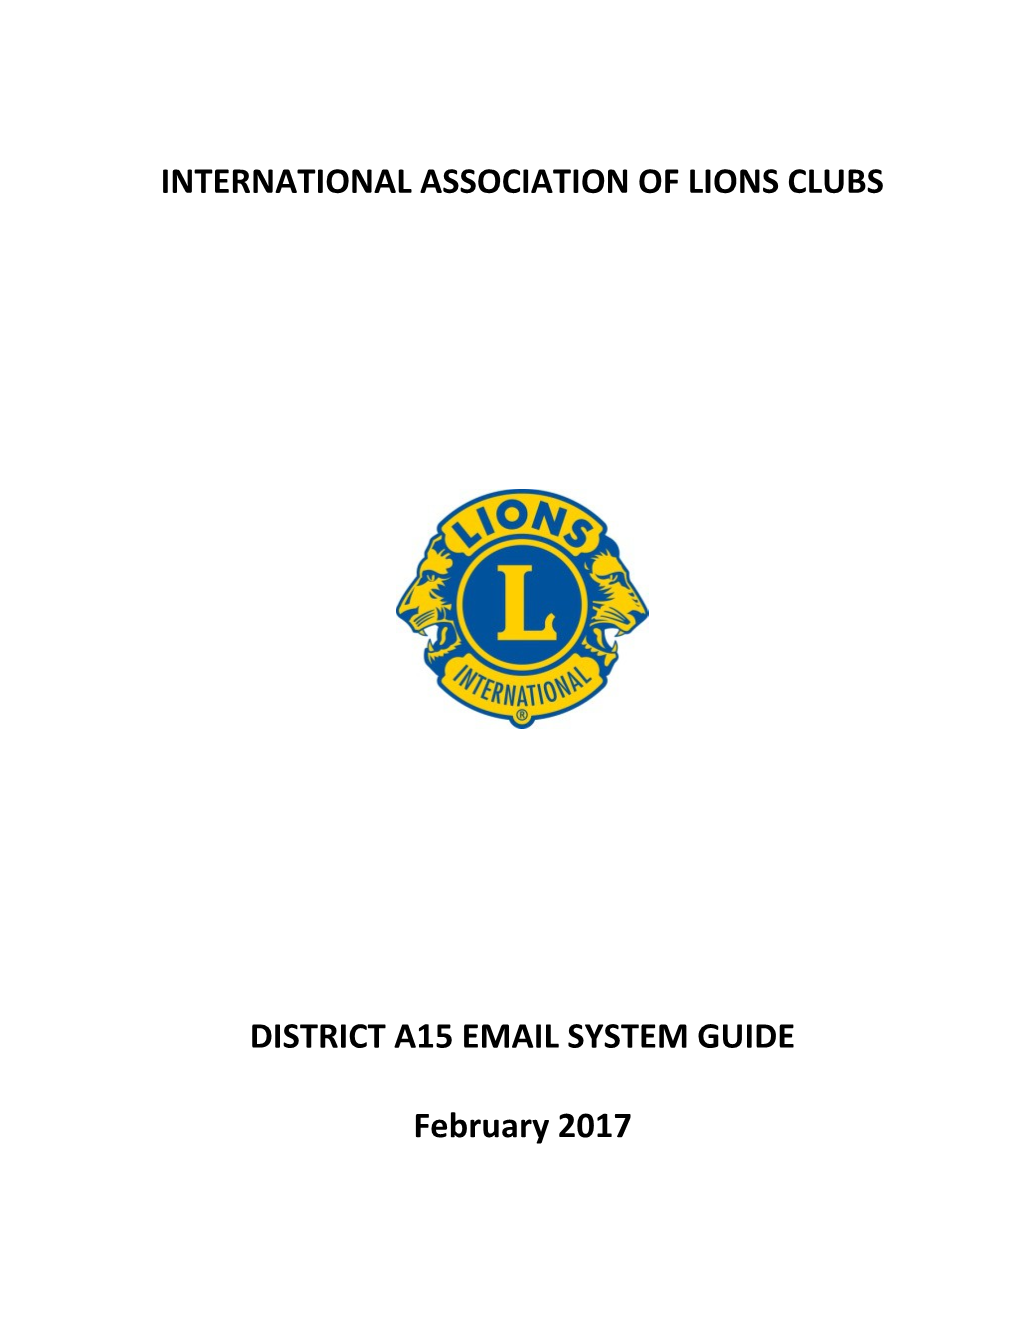 International Association of Lions Clubs